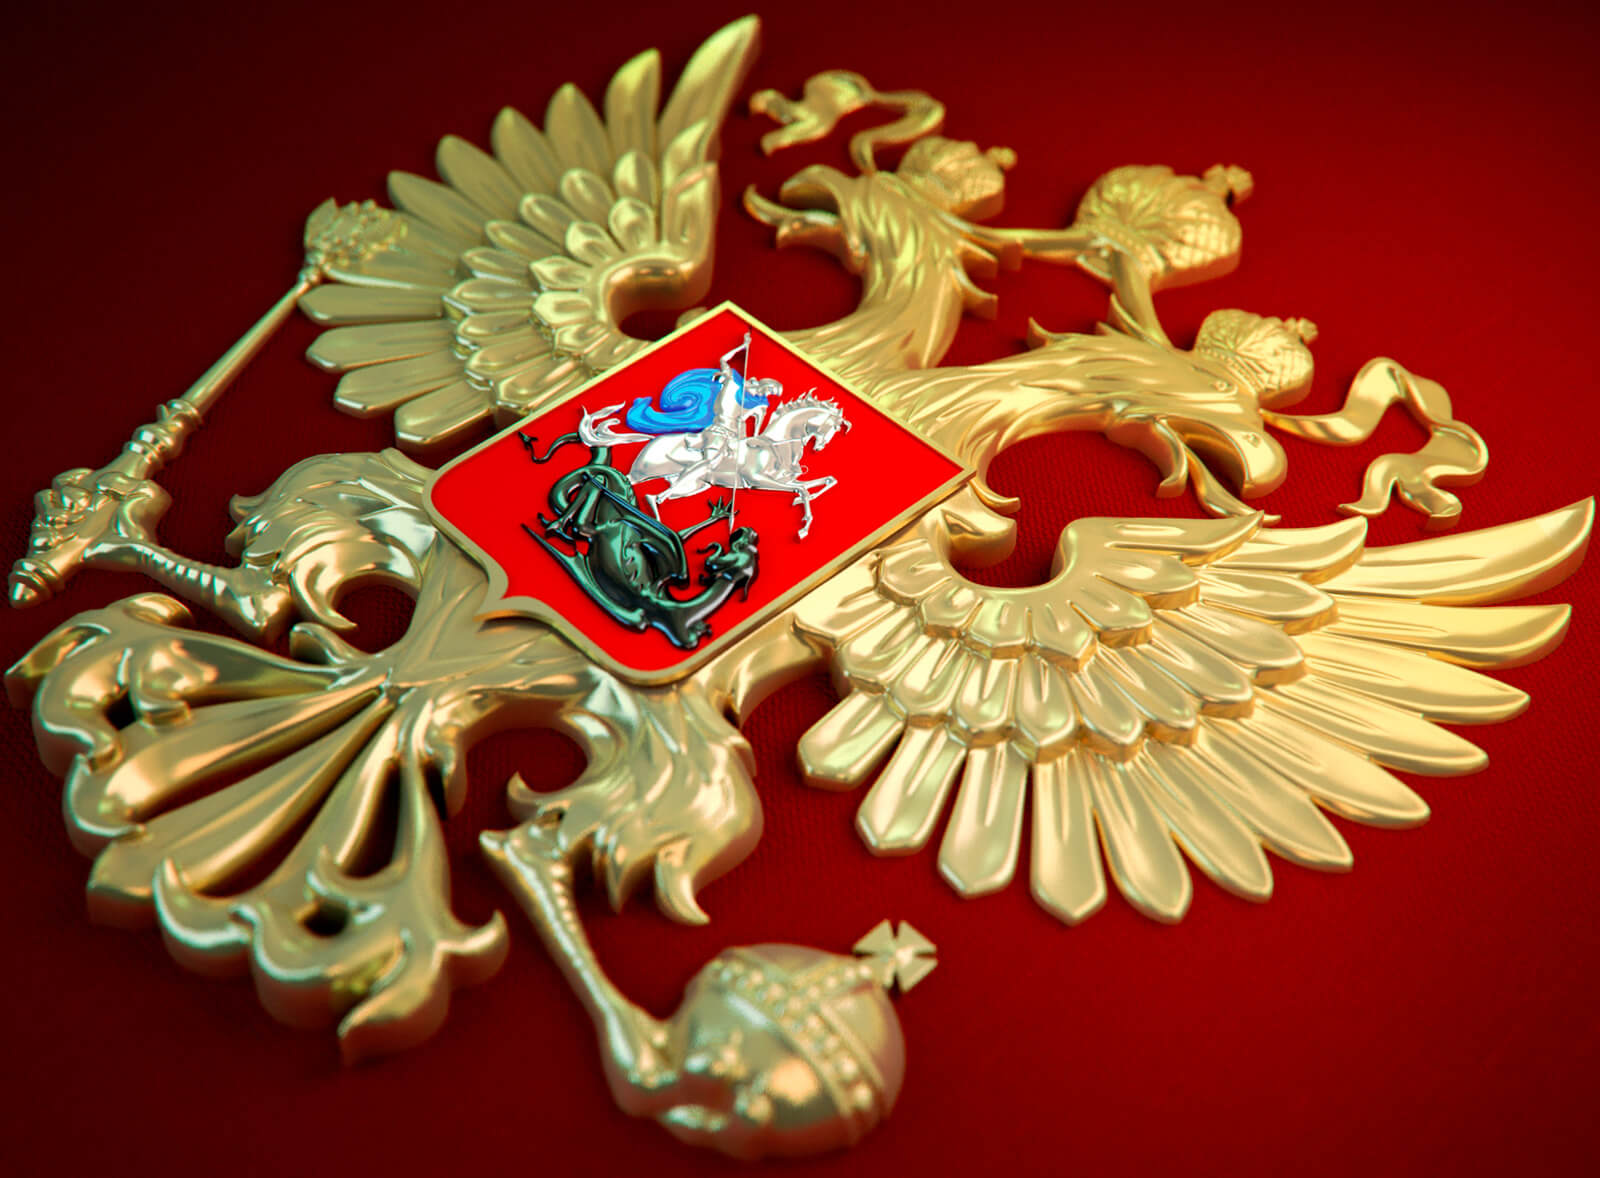 Купить эмблему герба России - двуглавый орел.